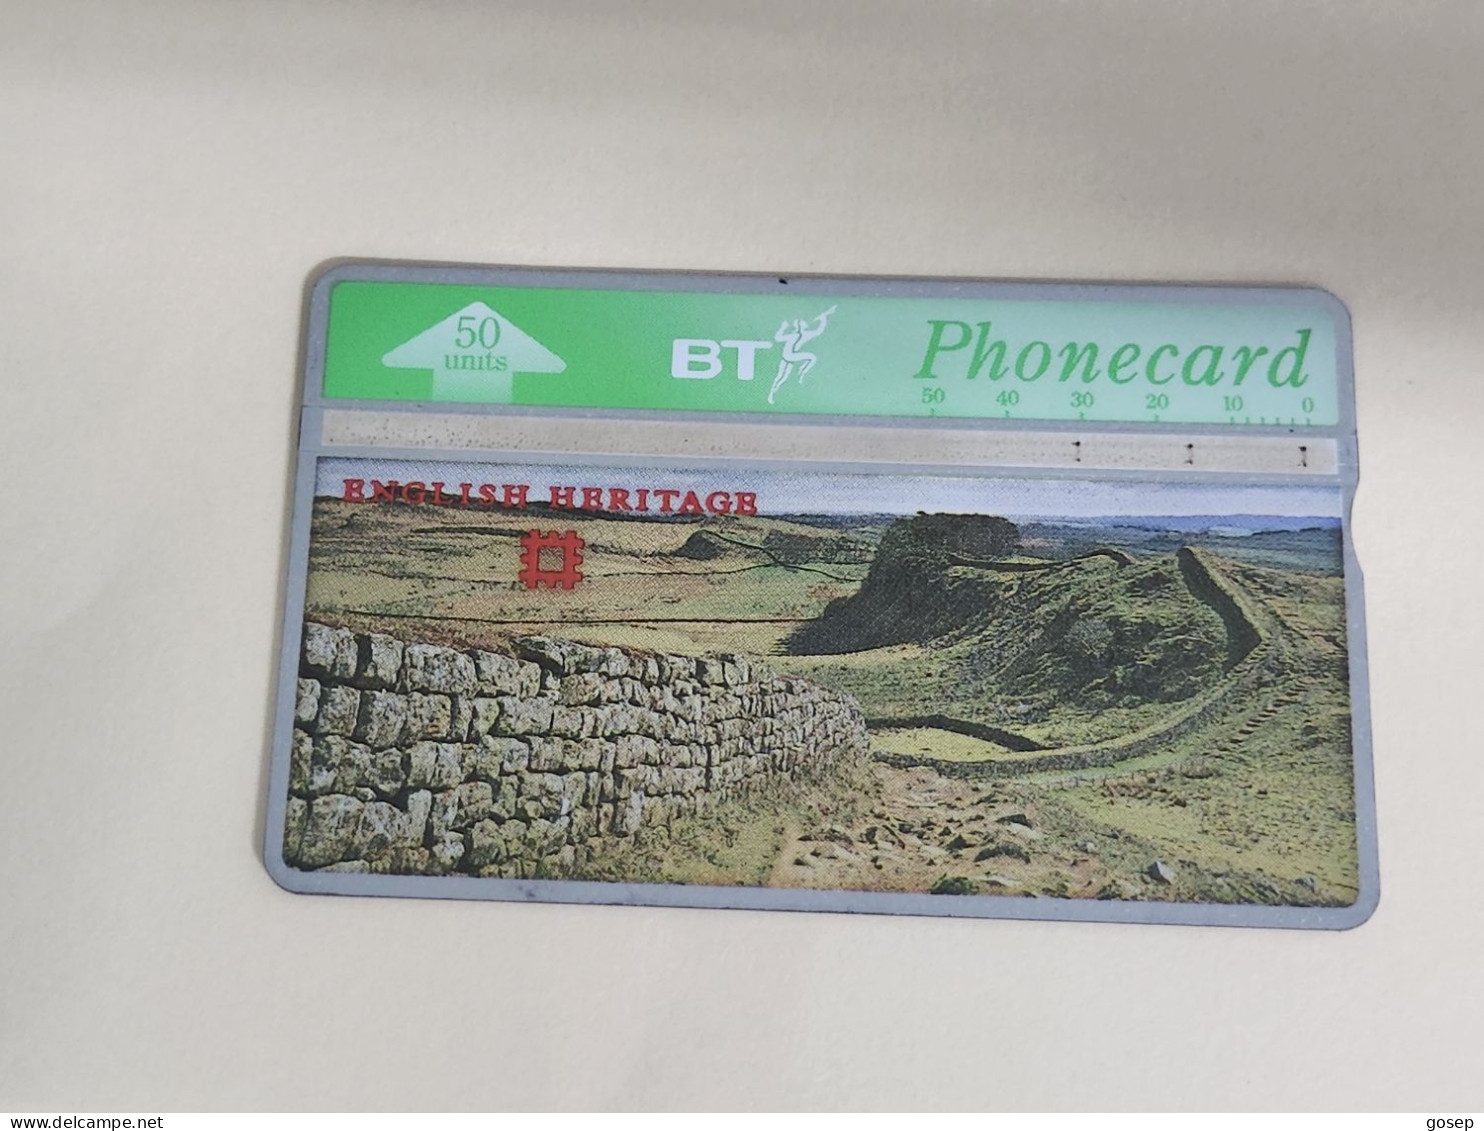 United Kingdom-(BTA107)-HERITAGE-Hadrian's Wall-(176)(50units)(527K18056)price Cataloge3.00£-used+1card Prepiad Free - BT Edición Publicitaria